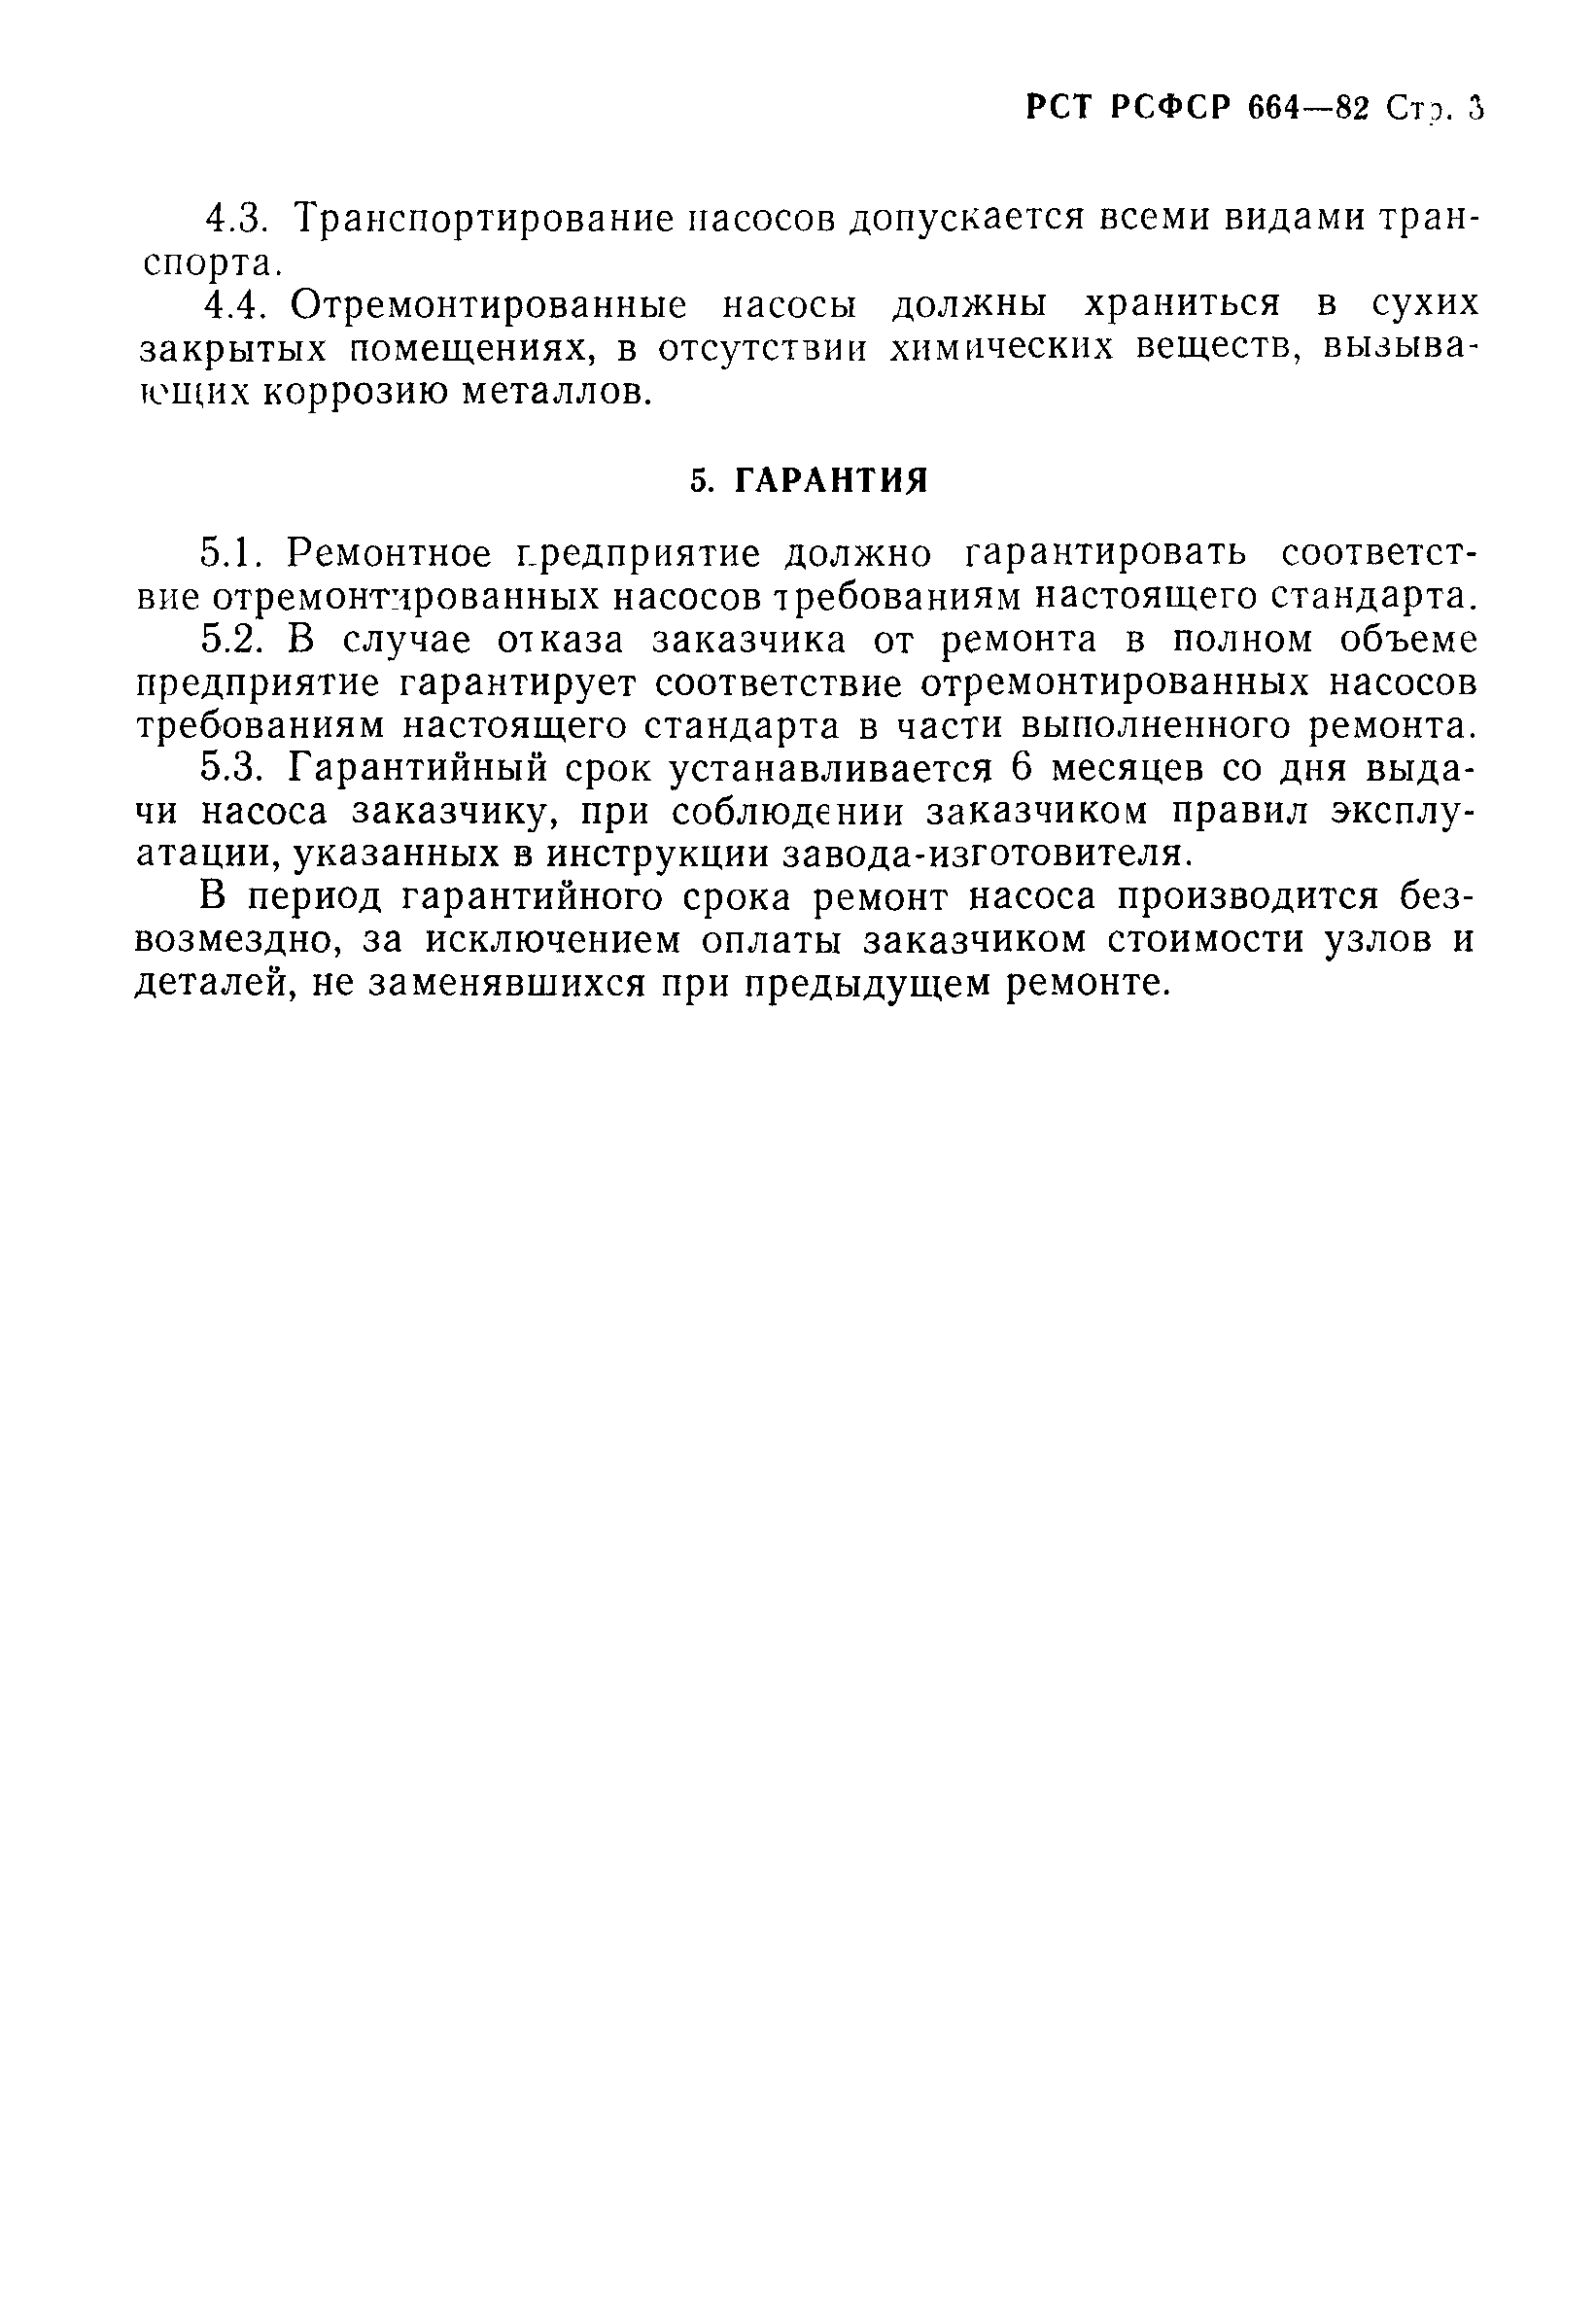 РСТ РСФСР 664-82